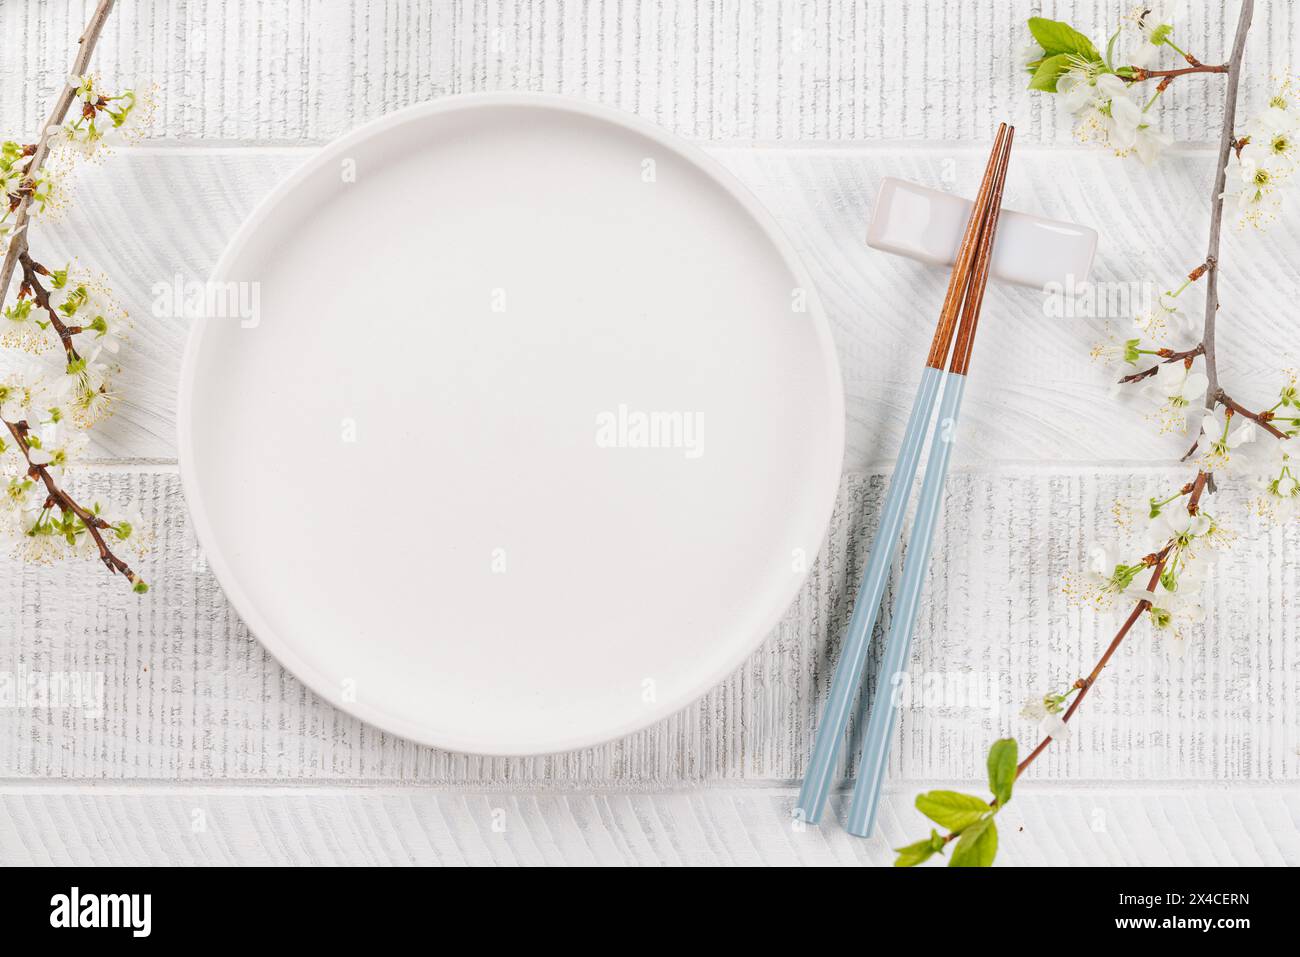 Ein leerer Teller auf dem Tisch, der mit Kirschblütenzweigen und Essstäbchen geschmückt ist, verkörpert die japanische Esskultur und bietet ausreichend Platz zum Kopieren Stockfoto